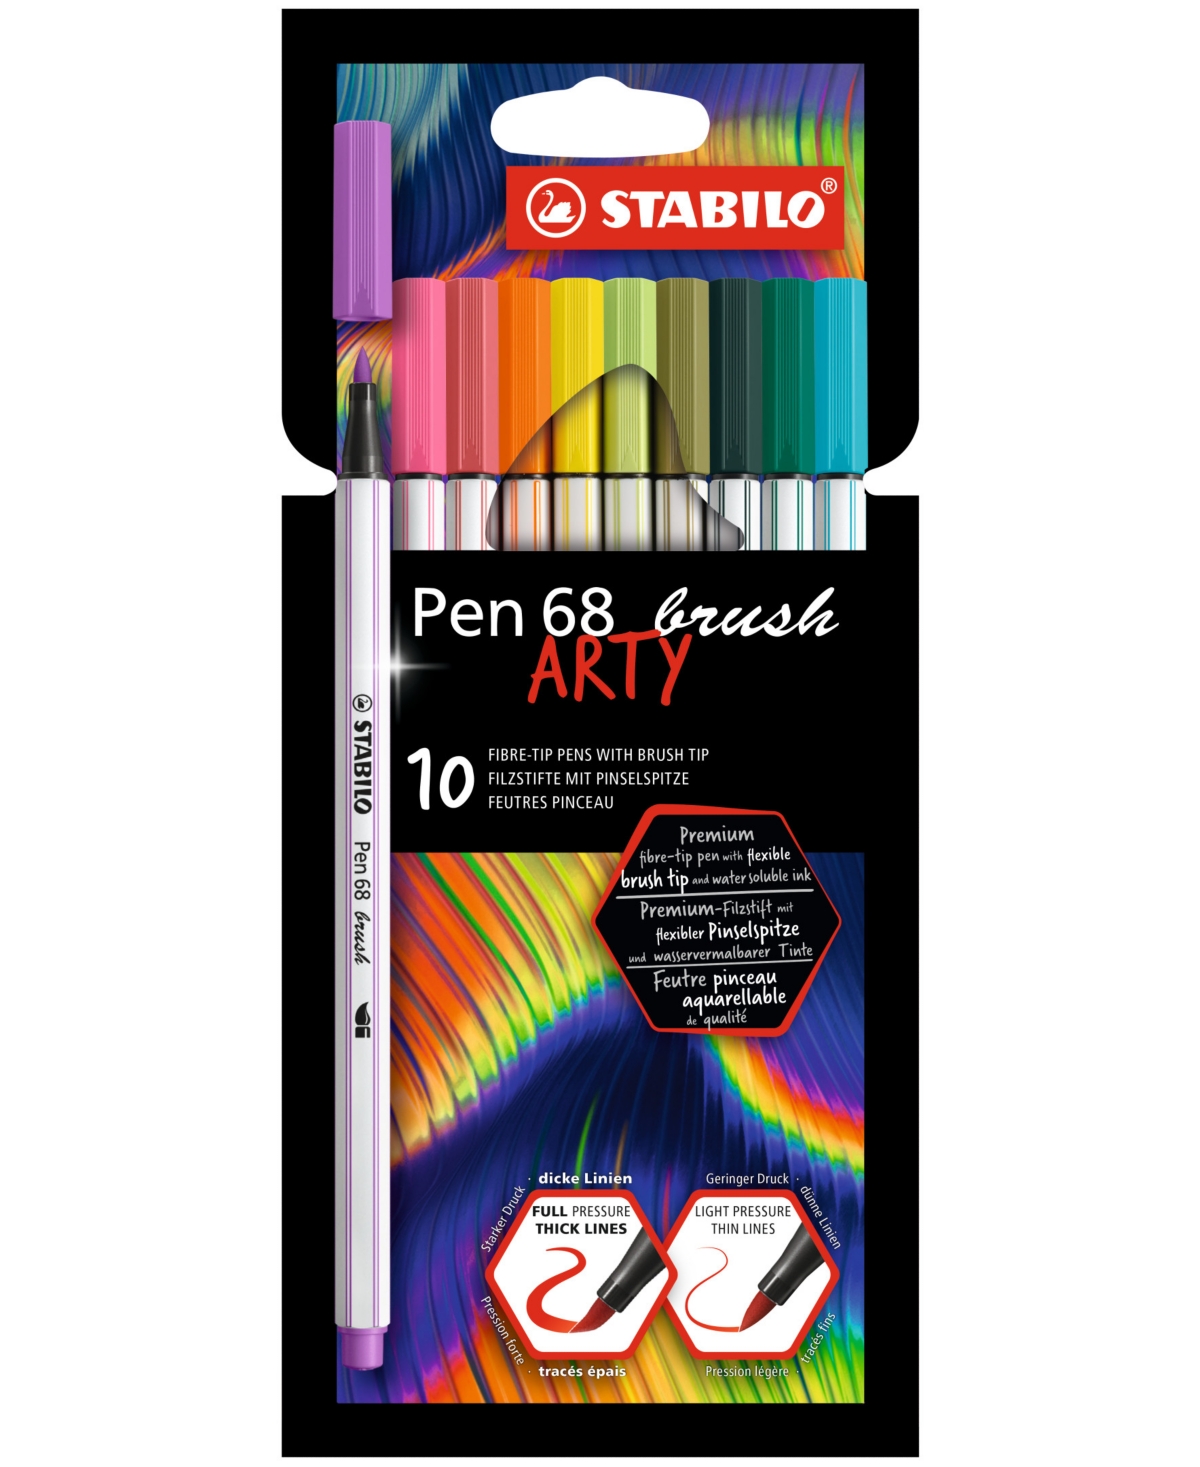 Pen 68 Arty Brush 10 Piece Set - Multi